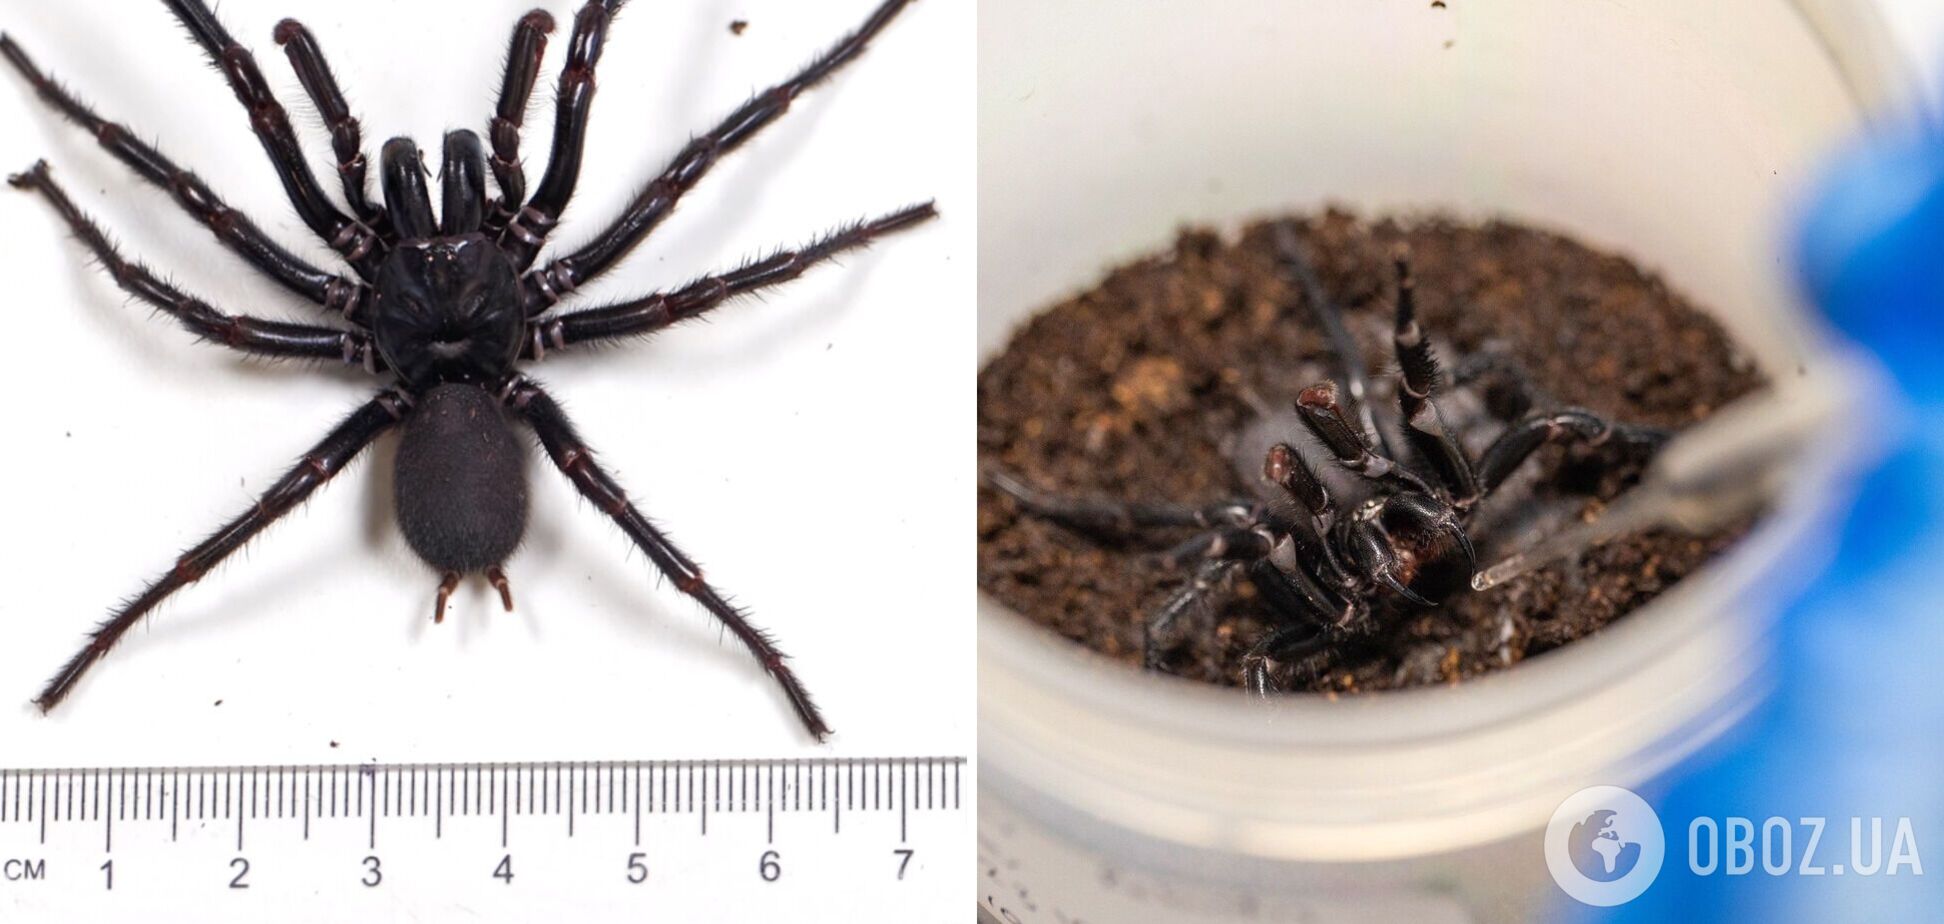 В Австралії знайшли найбільшого самця найотруйнішого павука у світі, ікла якого можуть проколоти ніготь. Фото